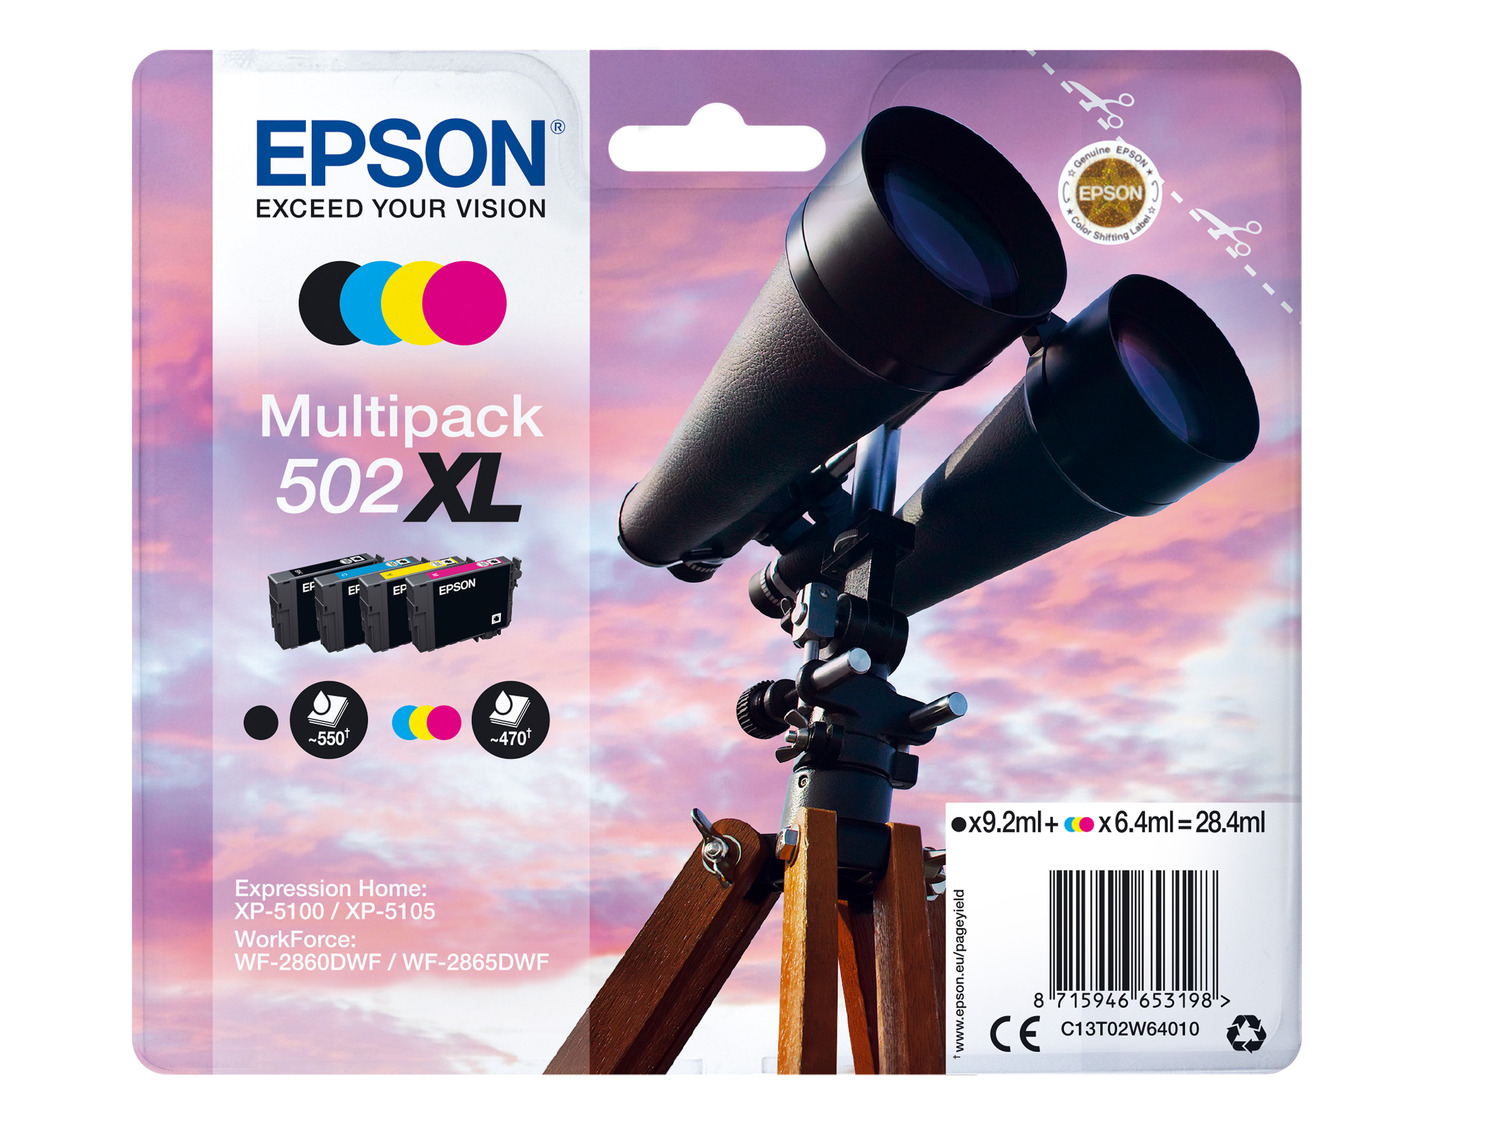 EPSON »502 XL« Fernglas Multipack Tintenpatronen Schwa…